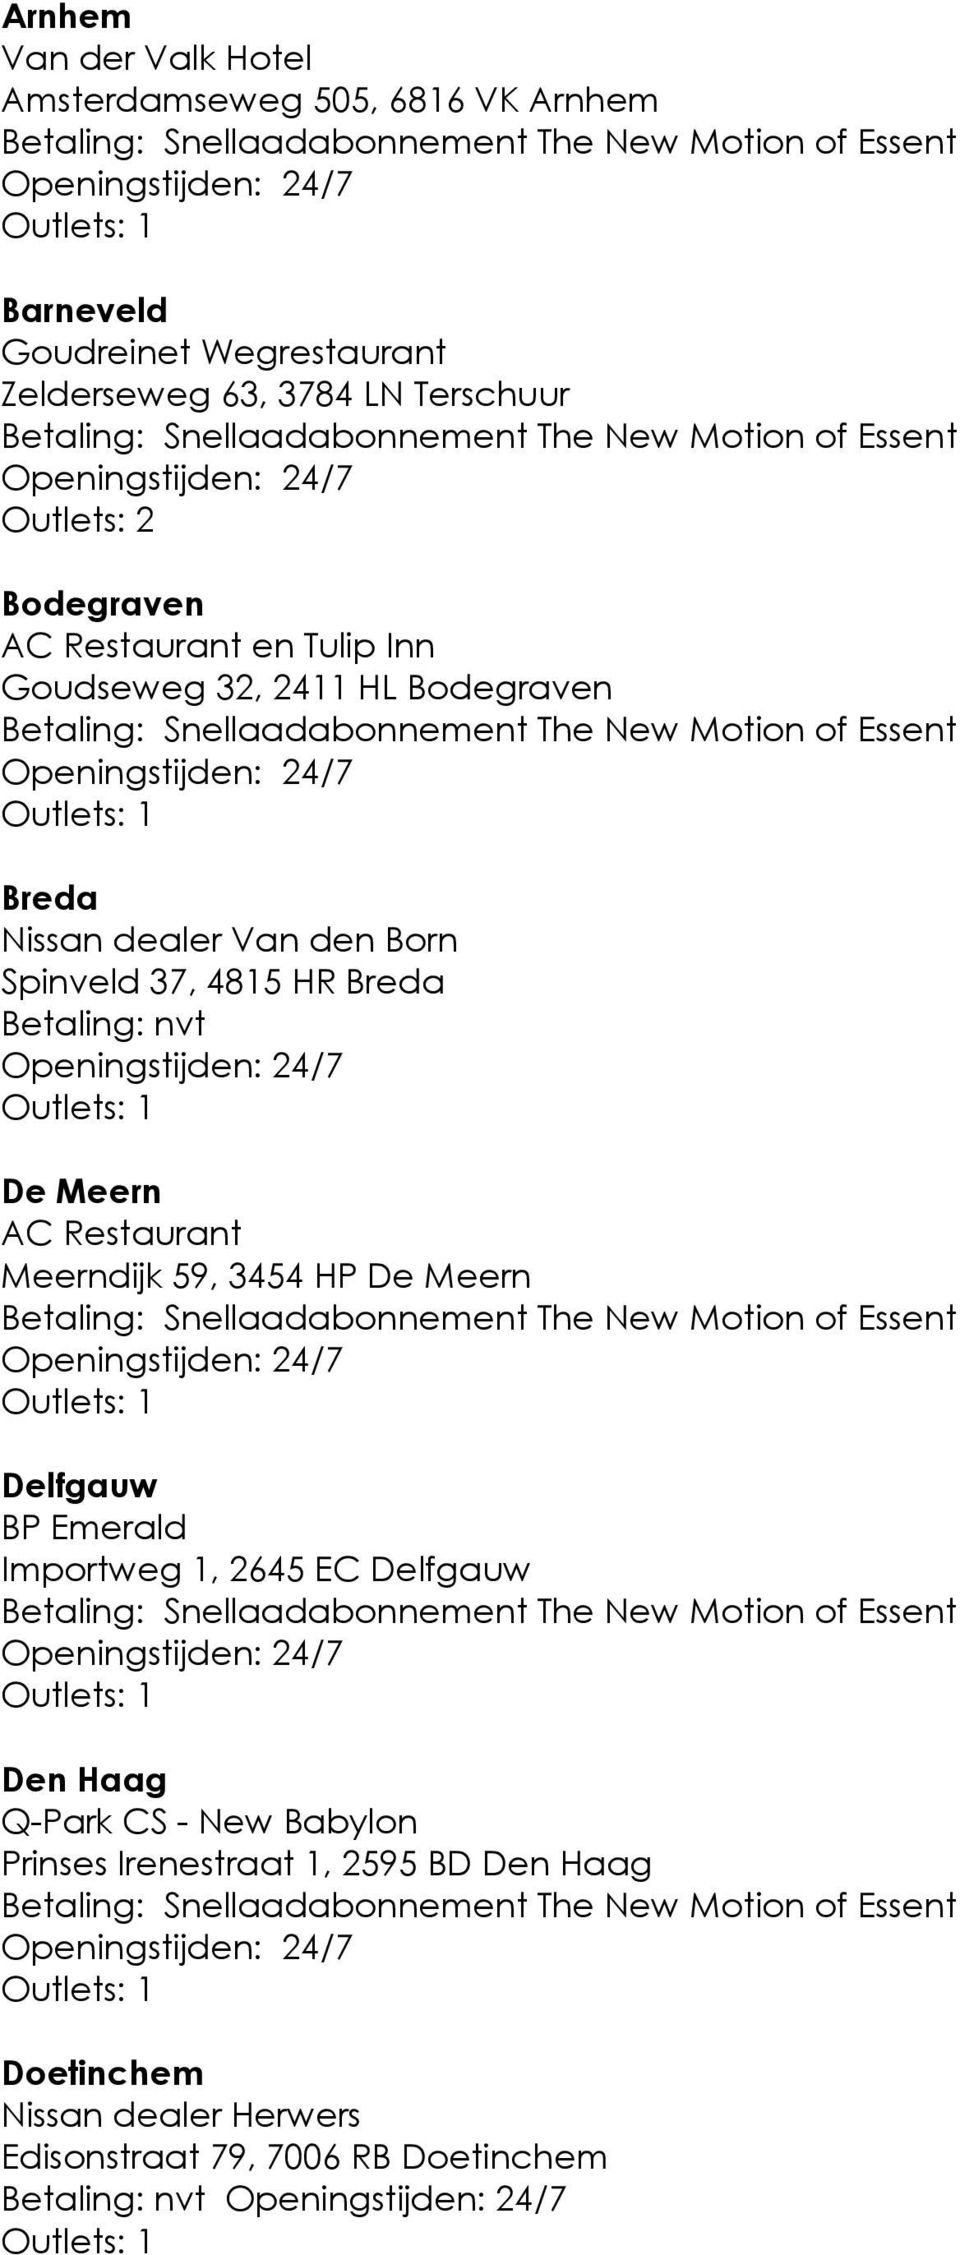 nvt De Meern AC Restaurant Meerndijk 59, 3454 HP De Meern Delfgauw BP Emerald Importweg 1, 2645 EC Delfgauw Den Haag Q-Park CS -